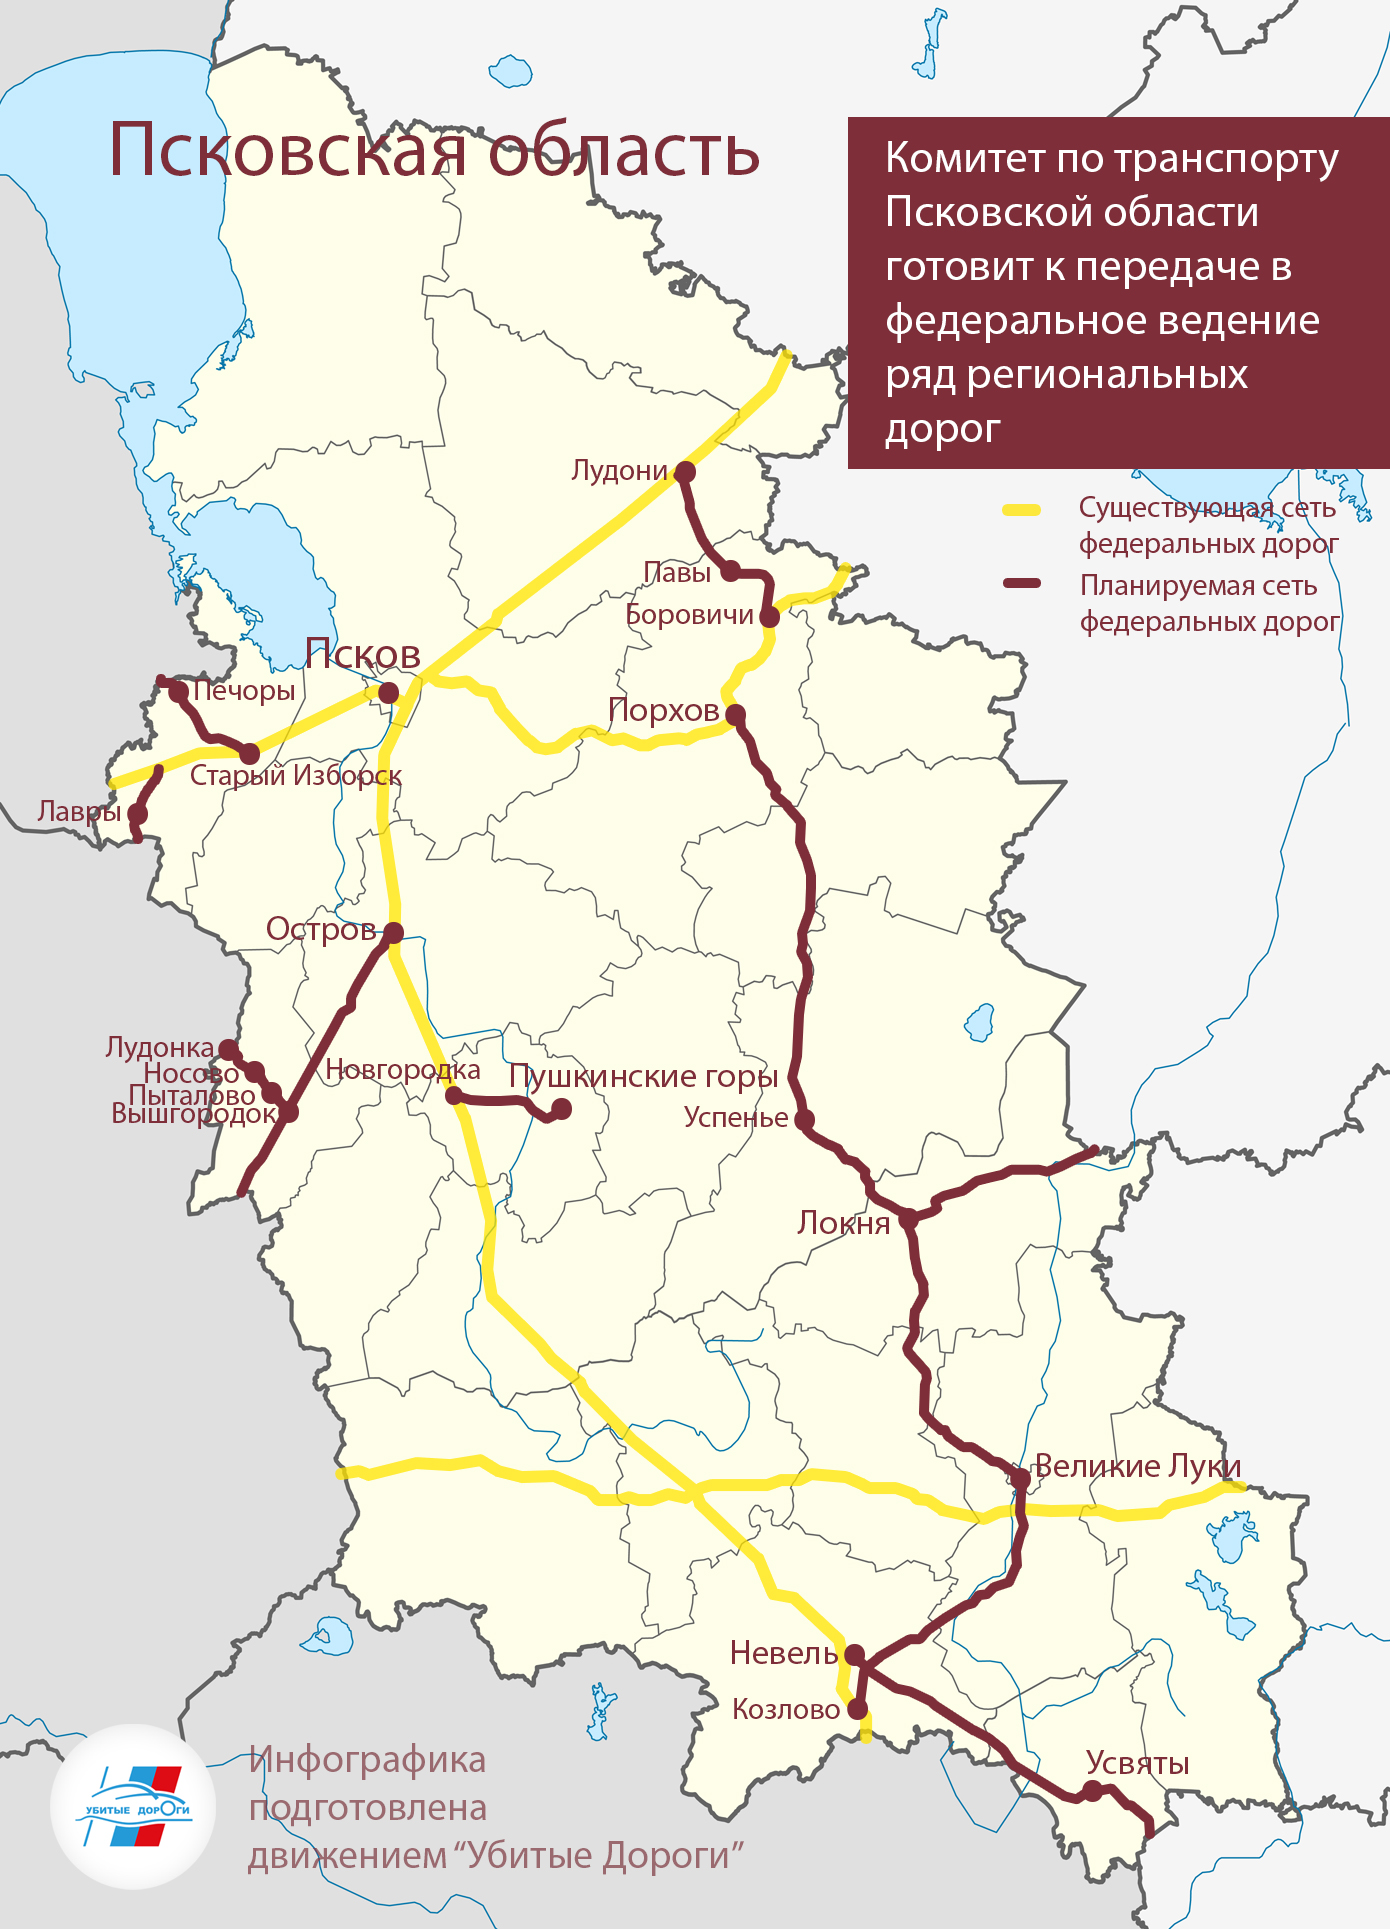 13 региональных дорог на территории Псковской области планируется передать в федеральное ведение